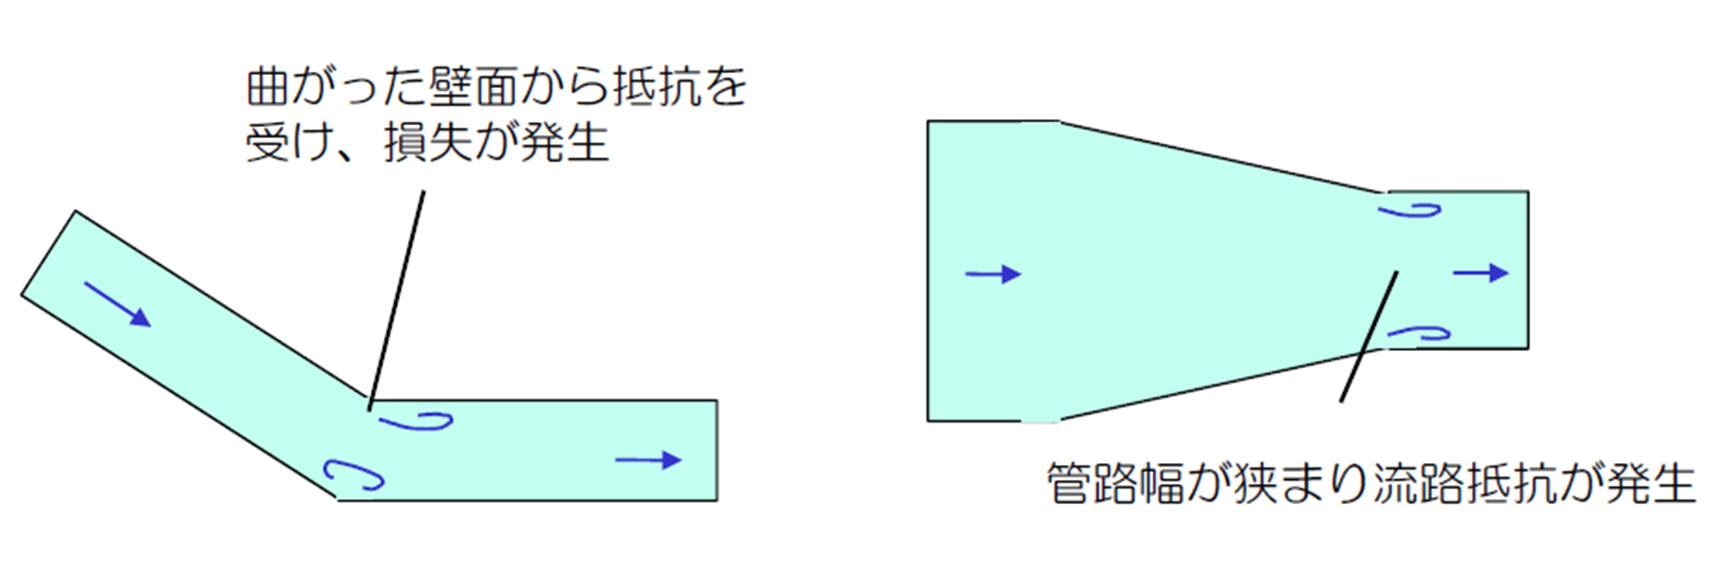 左図：曲がった壁面から抵抗を受け、損失が発生
右図：管路幅が狭まり流路抵抗が発生